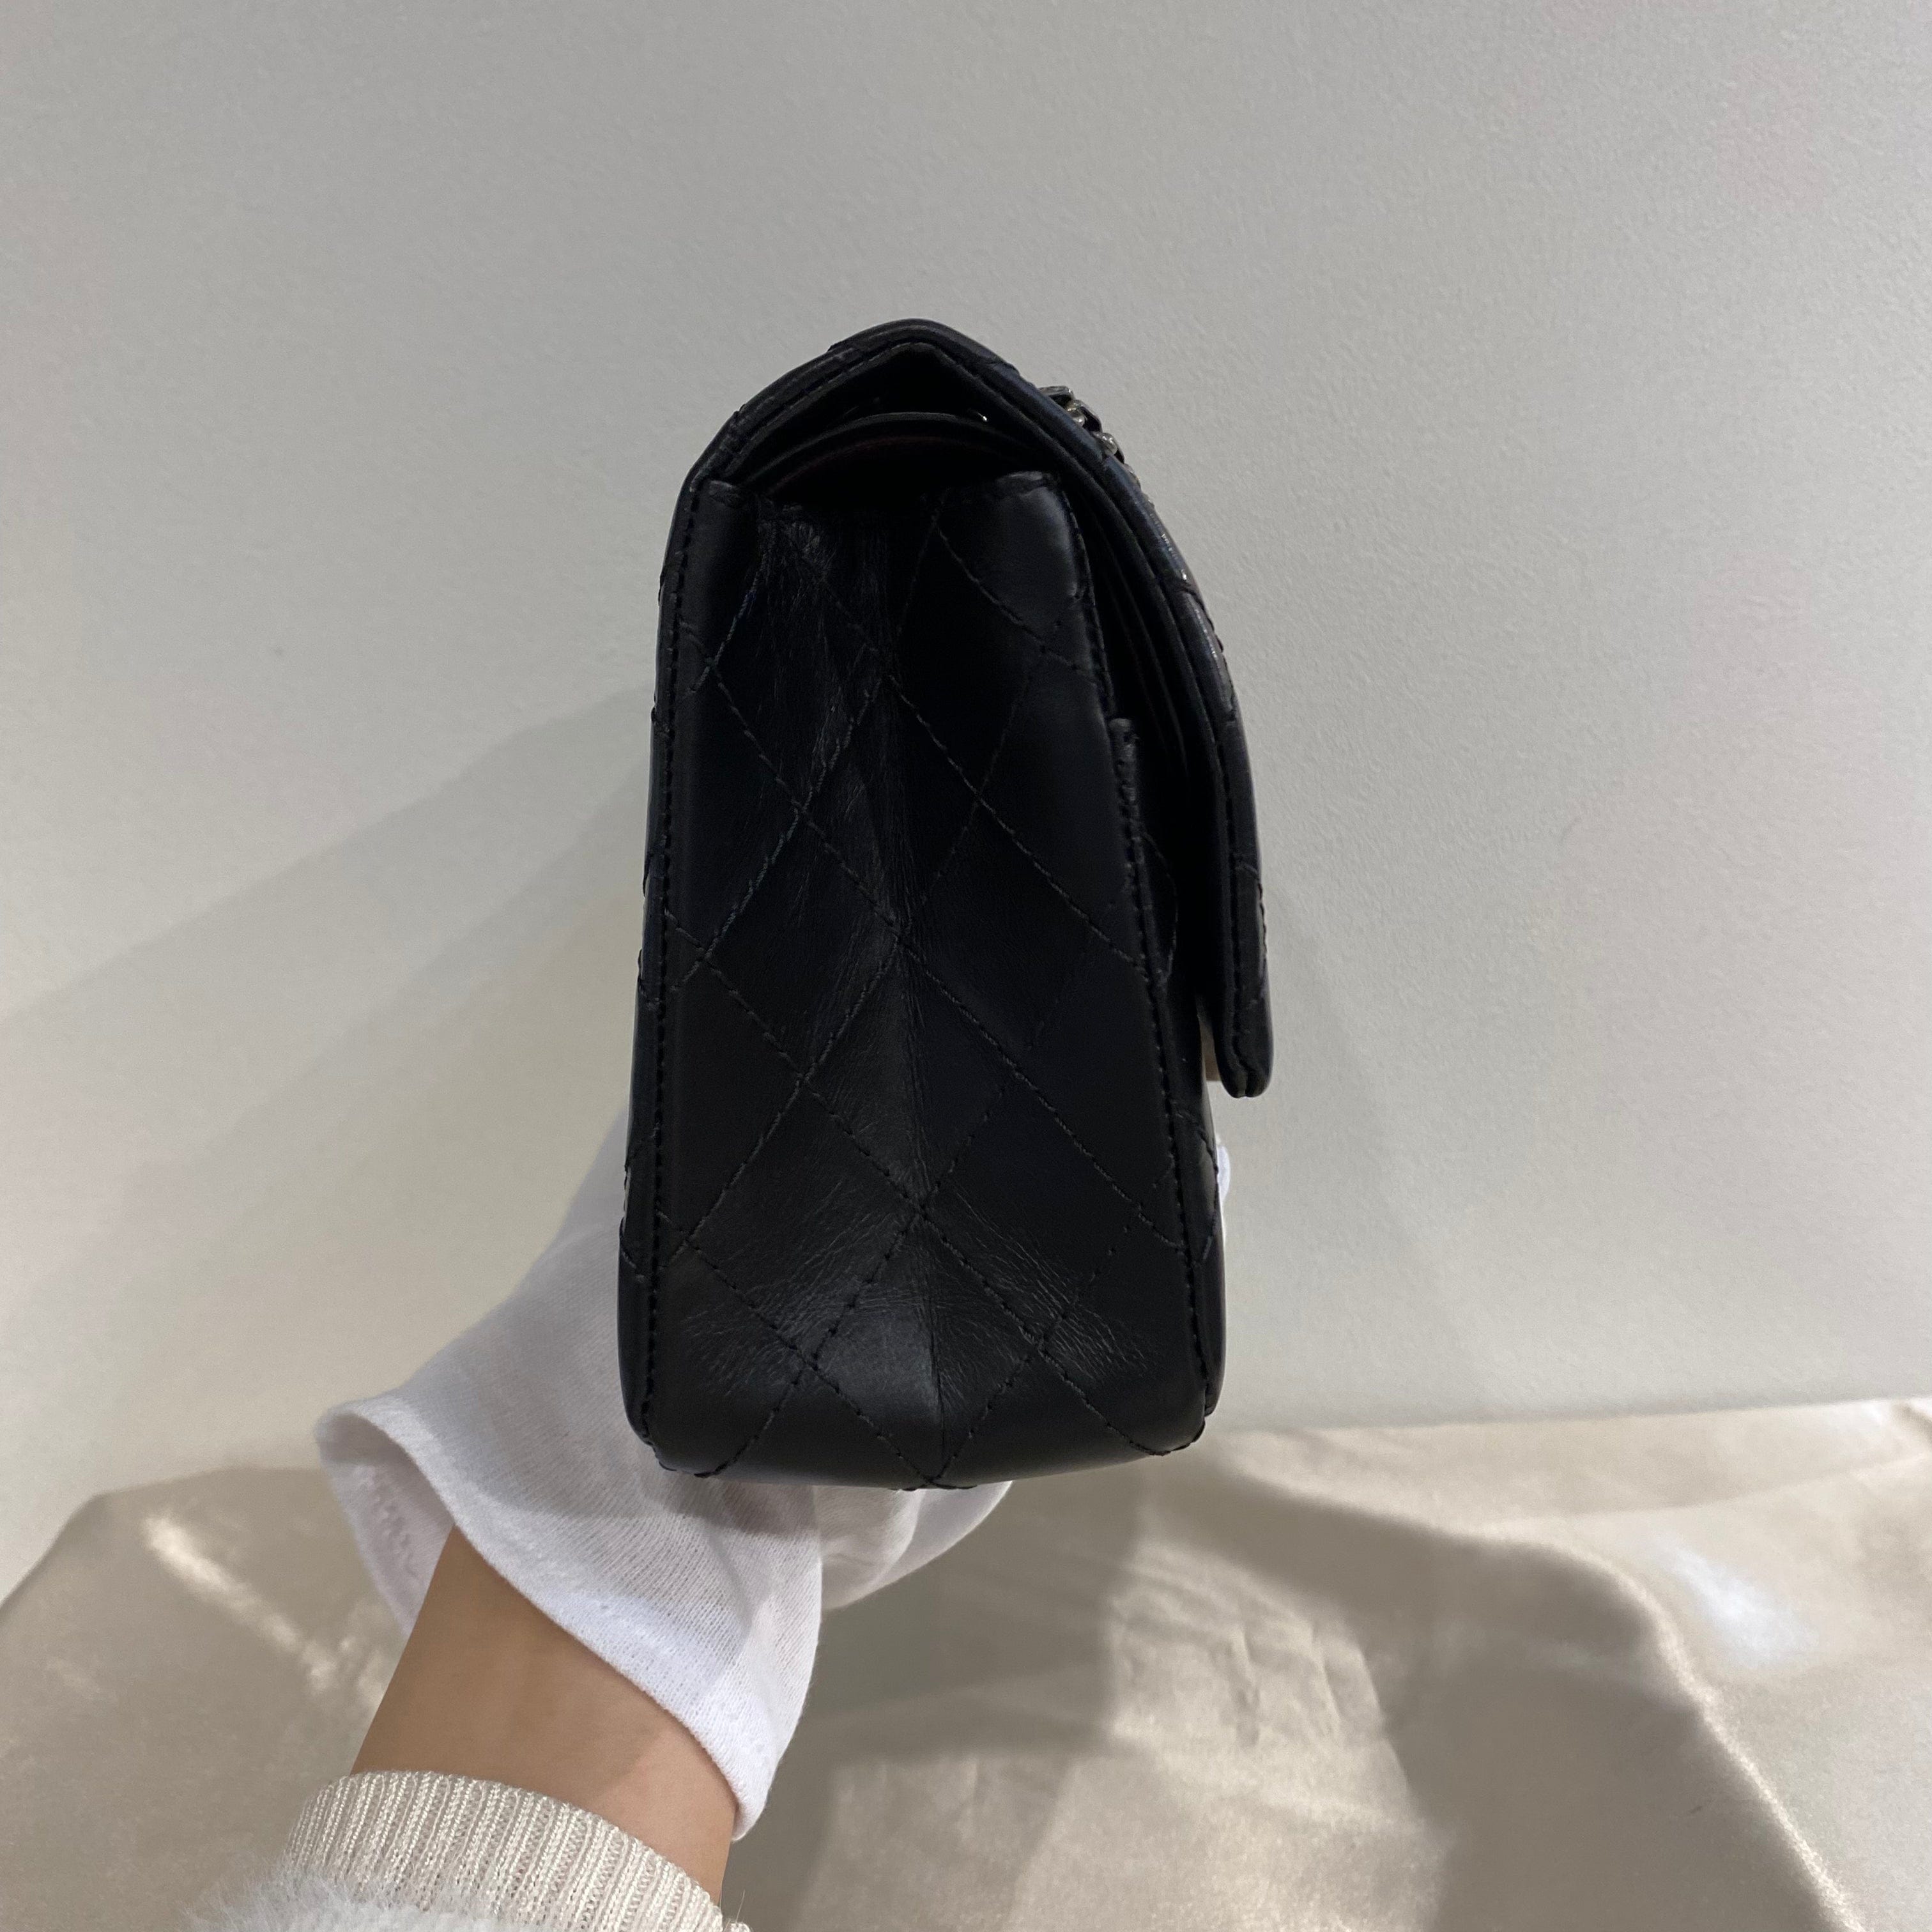 Chanel CHANEL 2.55 CHAIN SHOULDER BAG BLACK CALF SKIN 90214995